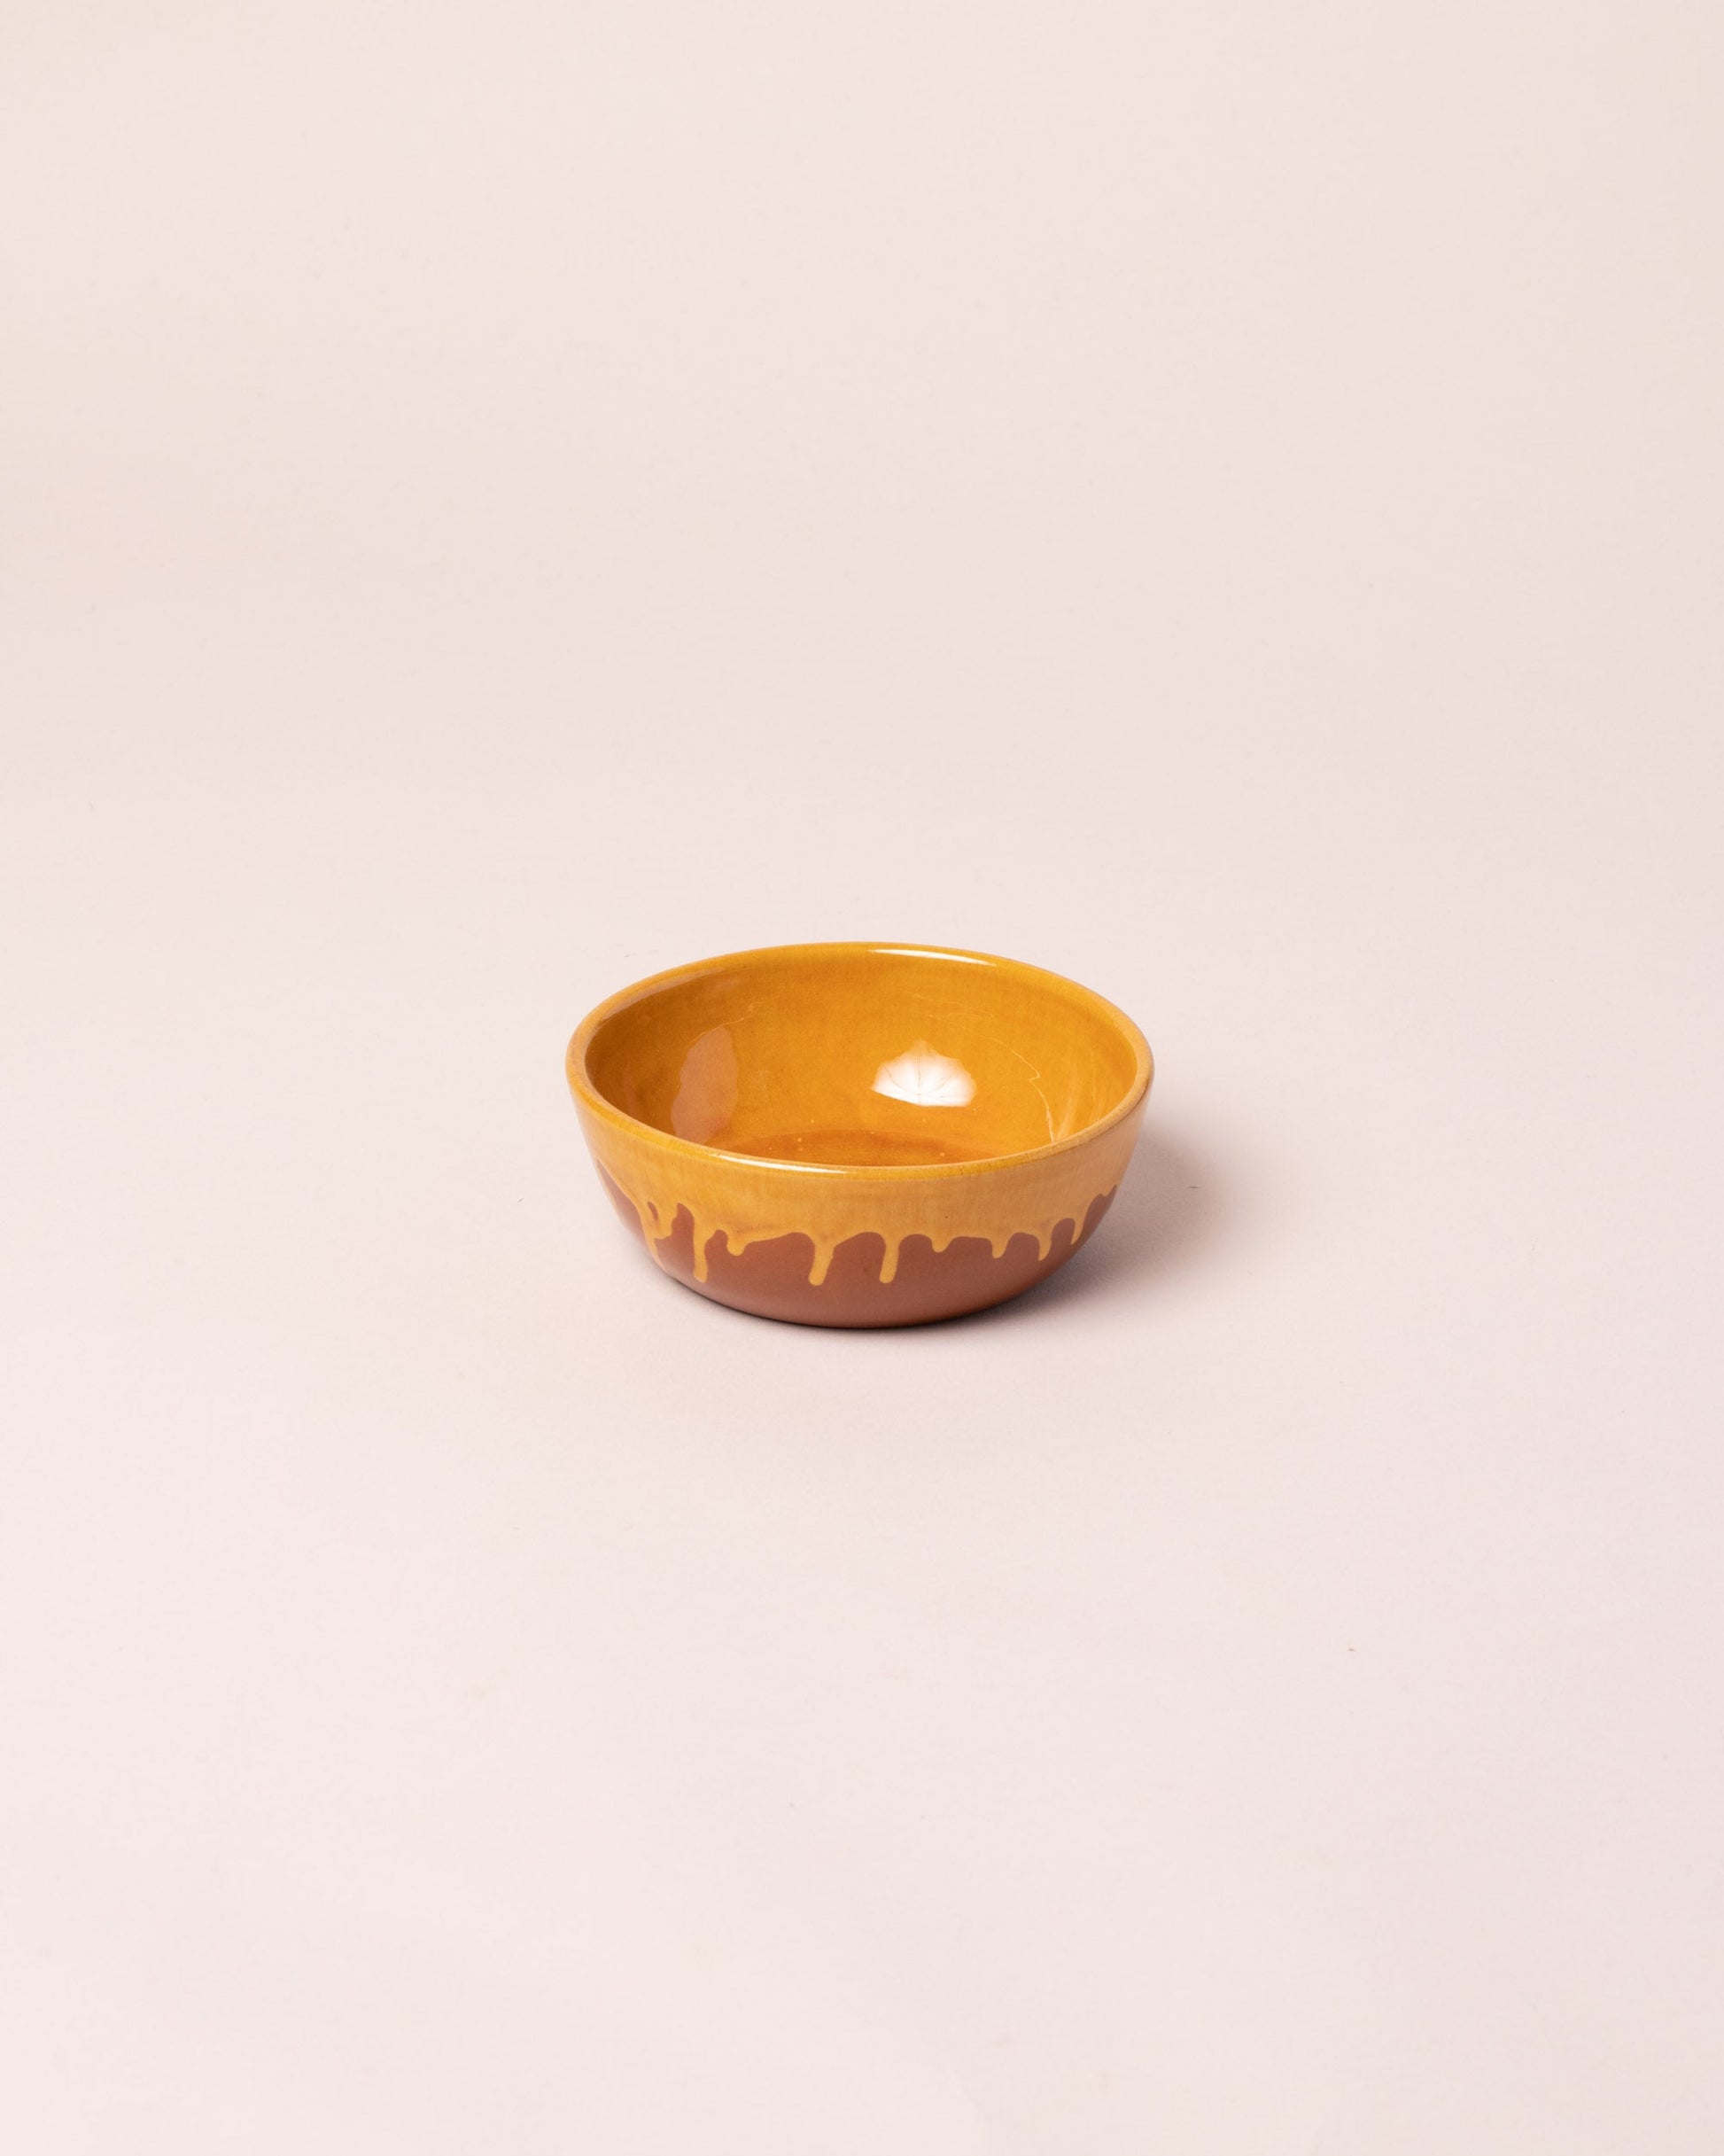 La Ceramica Vincenzo Del Monaco Caramel Yellow Dessert Bowl on light color background.